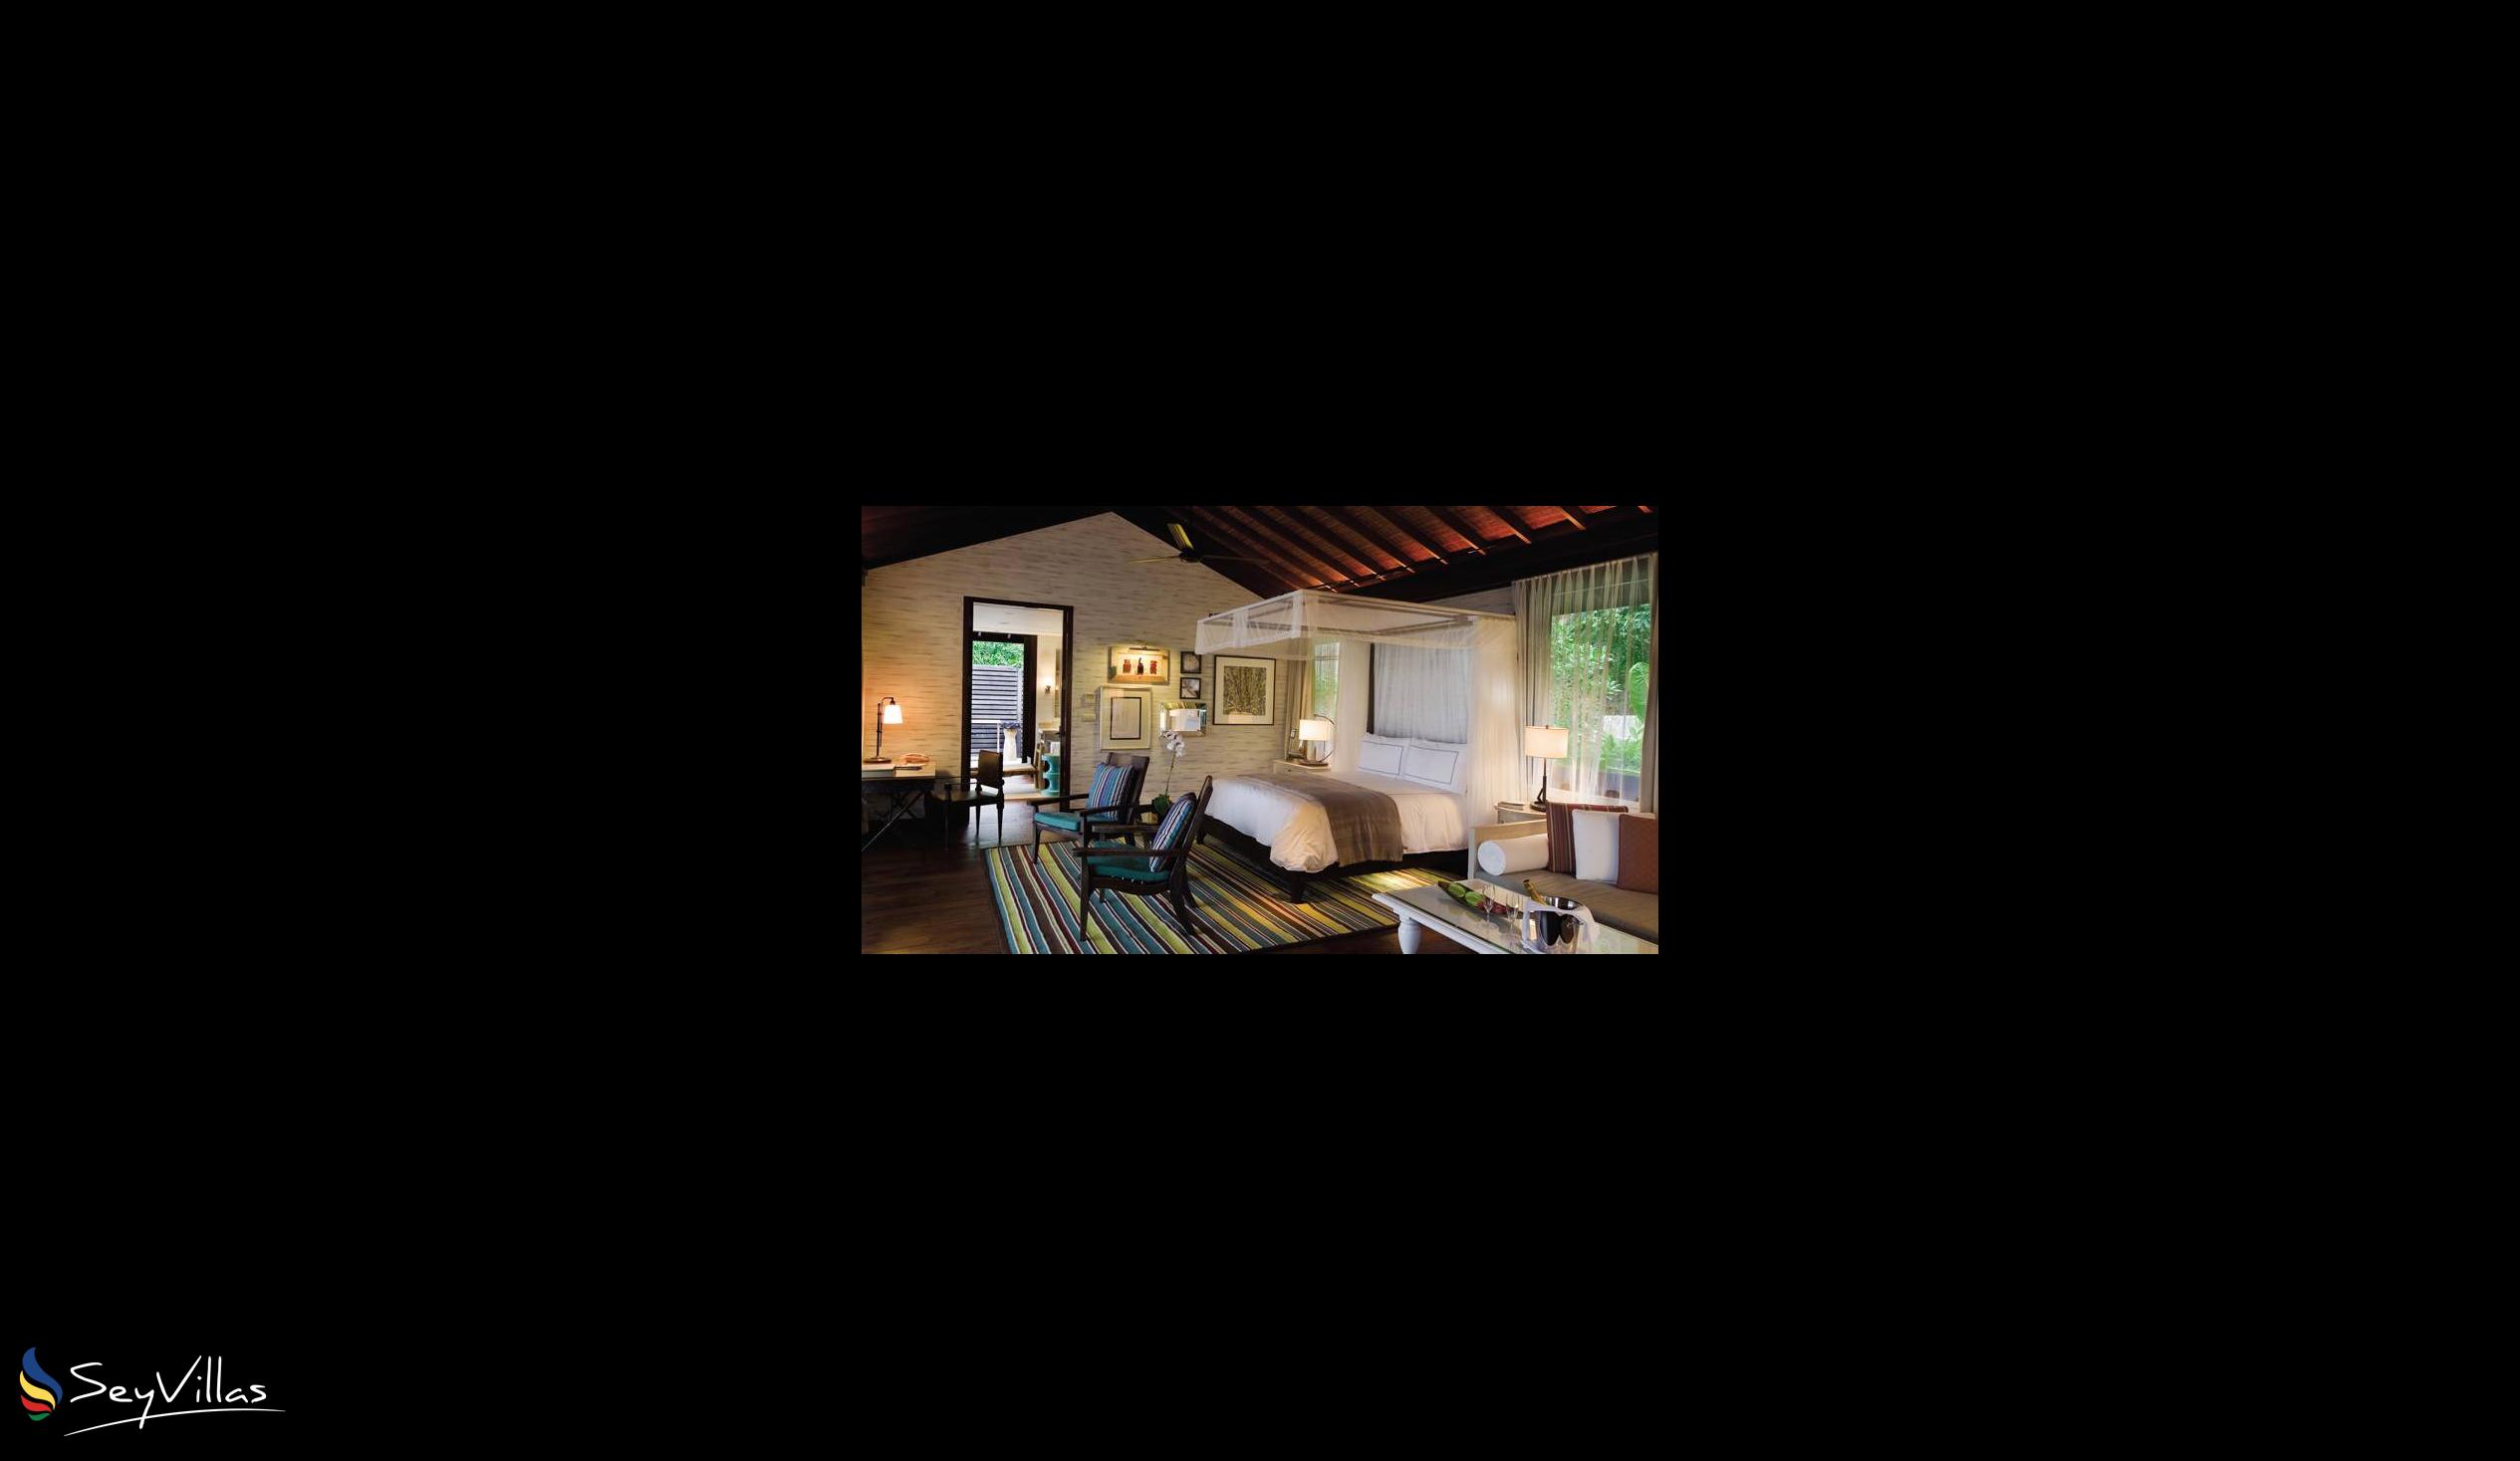 Foto 45: Four Seasons Resort - 2-Bedroom Ocean View Suite - Mahé (Seychellen)